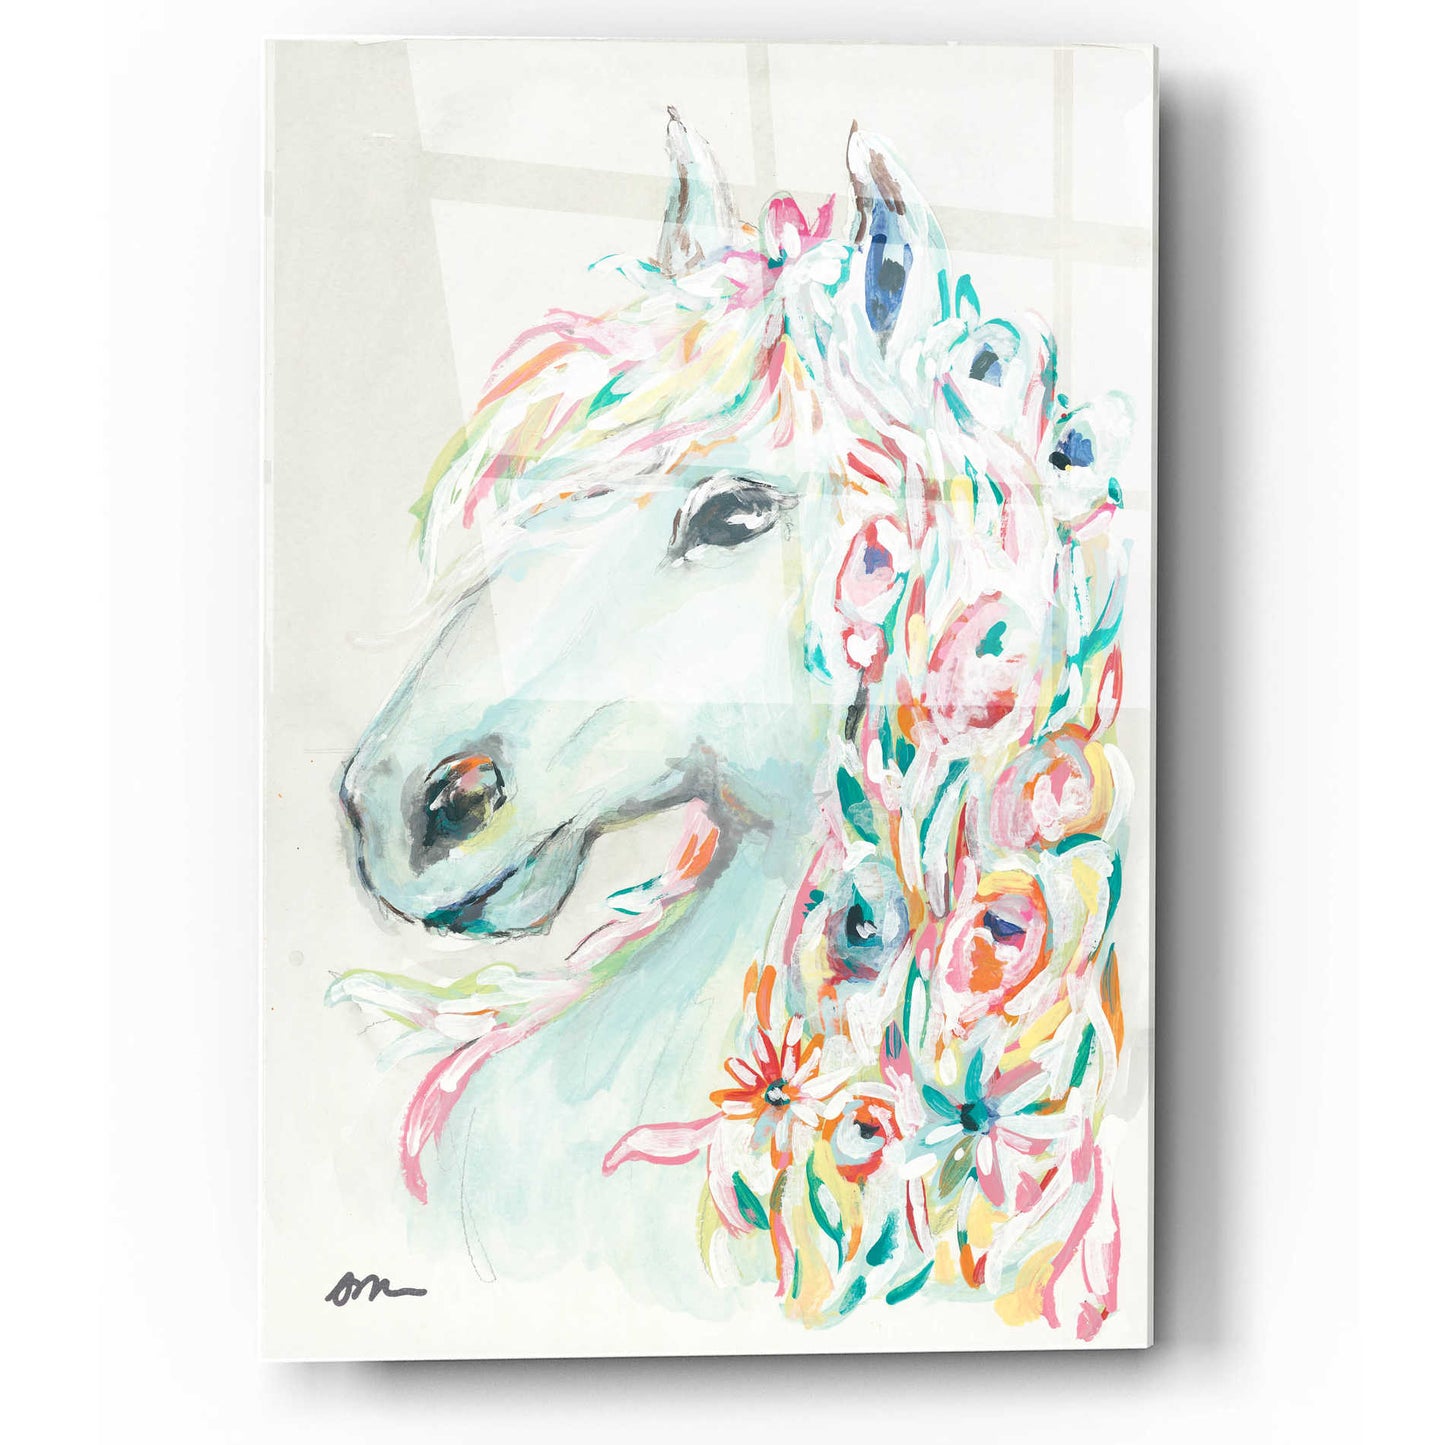 Epic Art 'Pony Rose' by Jessica Mingo, Acrylic Glass Wall Art,12x16